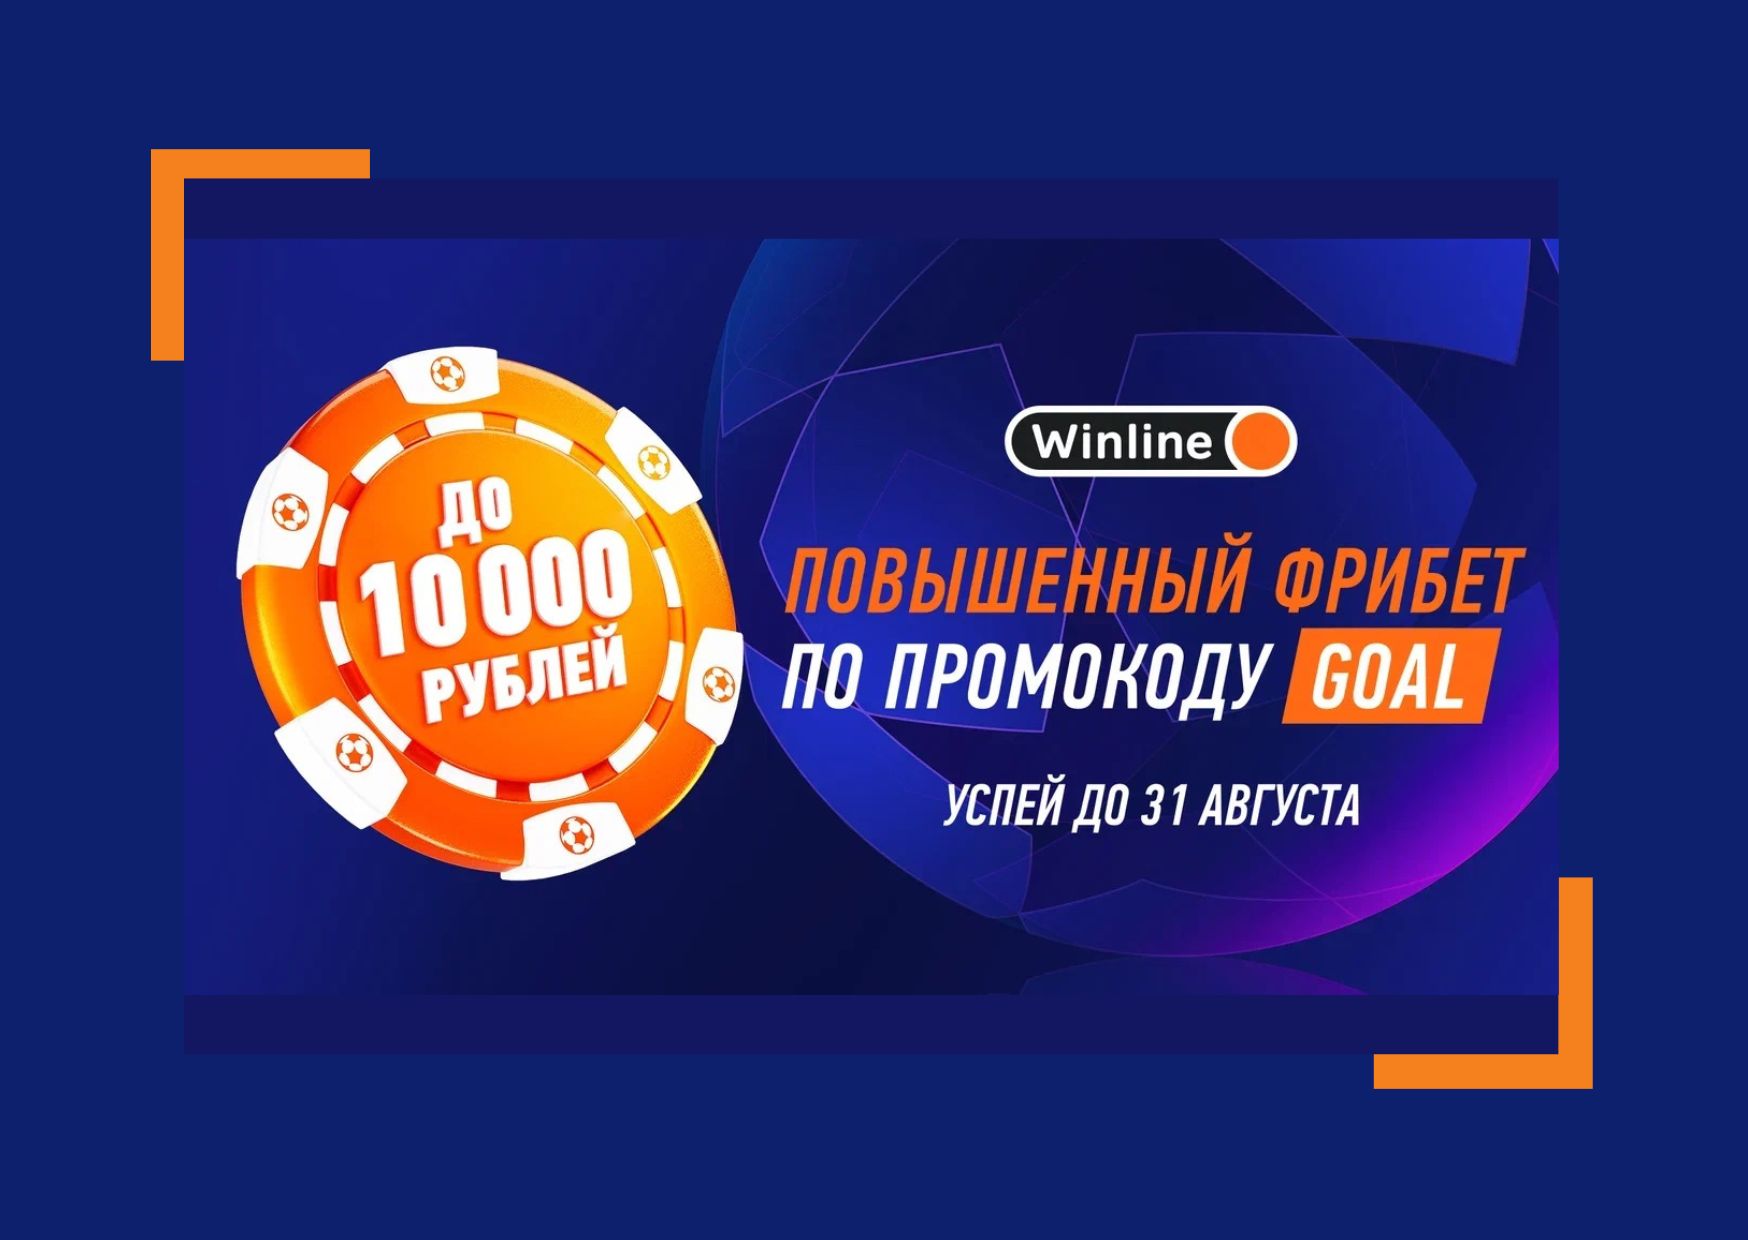 Winline получить фрибет 10000 рублей